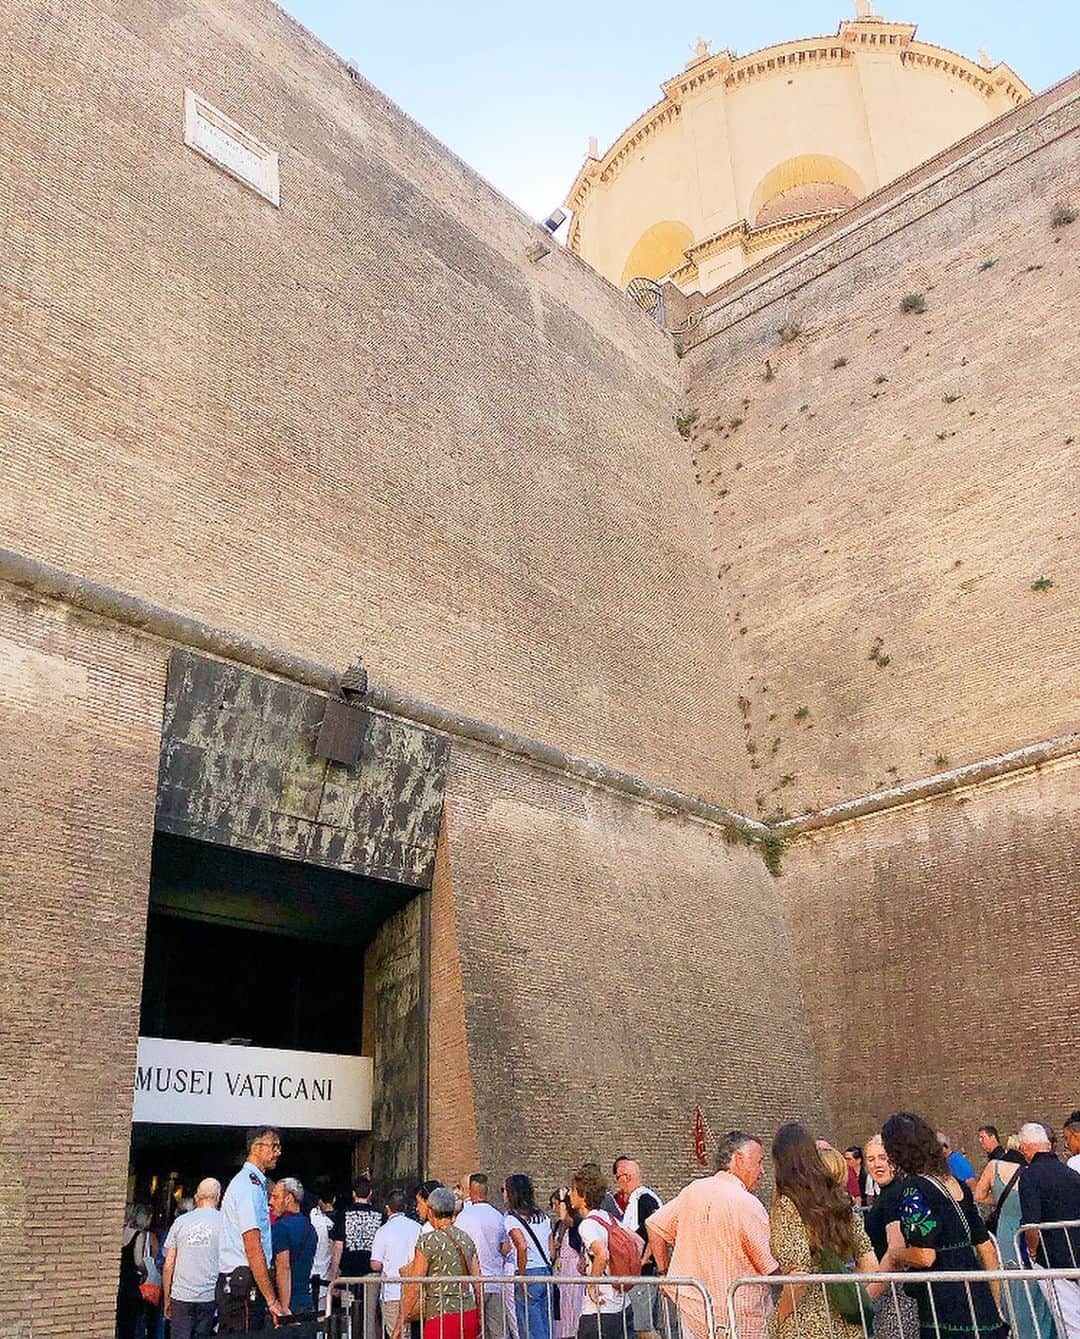 榊山敬代のインスタグラム：「🇮🇹… ・ つづき  ローマの目的地は バチカン美術館へ  予約をしなければ ２時間待ちという  美術館を囲むような 長蛇の列には驚く時  イタリアの美術館では入る前の 荷物検査がとても厳しくカメラ も解像度高い大型カメラもNGと のことで入場まで緊張感漂う時  天井から床まで隅々と 施された空間は圧巻で  残念でしたのはあまり にも鑑賞者が多すぎて 立ち止まって鑑賞する と立ち止まらないでと 注意されるという忙し い美術鑑賞スタイルで  ゆっくり歩きながら 撮影して後程ゆっく り作品を見返す作戦  有名なラオコーン像も ありましたが近づけな い程の人気でして遠く から記念にと記録の巻  鑑賞してゆくうちに このゴテゴテに細か く装飾された感性は 自分の遺伝子がザワ ザワしてくるという 不思議な感覚になり  わたしの作品も隅々まで 描き込む装飾的な感覚と 一致するものがありまし てもしかして過去生では イタリアに居たのではと 親しみも湧きましたとき  細密な世界観が大好きなので 一日中ココに居たいと感じる のは初めての体感でしたけど  バチカン美術館はとにかく 広いのでお庭を抜けまして バチカン美術館内の次なる  神々しいスポットへ  つづく  また今回  1番感動しましたのは システィーナ礼拝堂  アダムの創造や原罪と楽園追放 とミケランジェロの傑作を鑑賞  残念ながらこちらは神聖な場所 とのことで撮影禁止と肌を隠さ ないと鑑賞できない上に会話な ど控える厳かなスポットでした  画像の記録ができませんでしたが 最後の説明の画像にて記念に記録  美術書で何度も見かけて いましたが実物の偉大さ など空間には圧巻でした  自然光で眺める天井画は 日に日に色合いが変わる 景色もまたご縁のように  観る人の心を映すような 神聖なる空間なのでした  #MuseiVaticani #バチカン美術館 #StatodellaCittàdelVaticano #バチカン　 #システィーナ礼拝堂 #CappellaSistina #ローマ #Roma #イタリア #Italia #海外旅行 #旅行 #旅 #芸術  #アート #ART #travel #人生思い出づくり #毎日がスペシャル  #人生楽しもう #人生一度きり #日本画家 の #外出こんなもん #旅スタグラム #たびすたぐらむ」